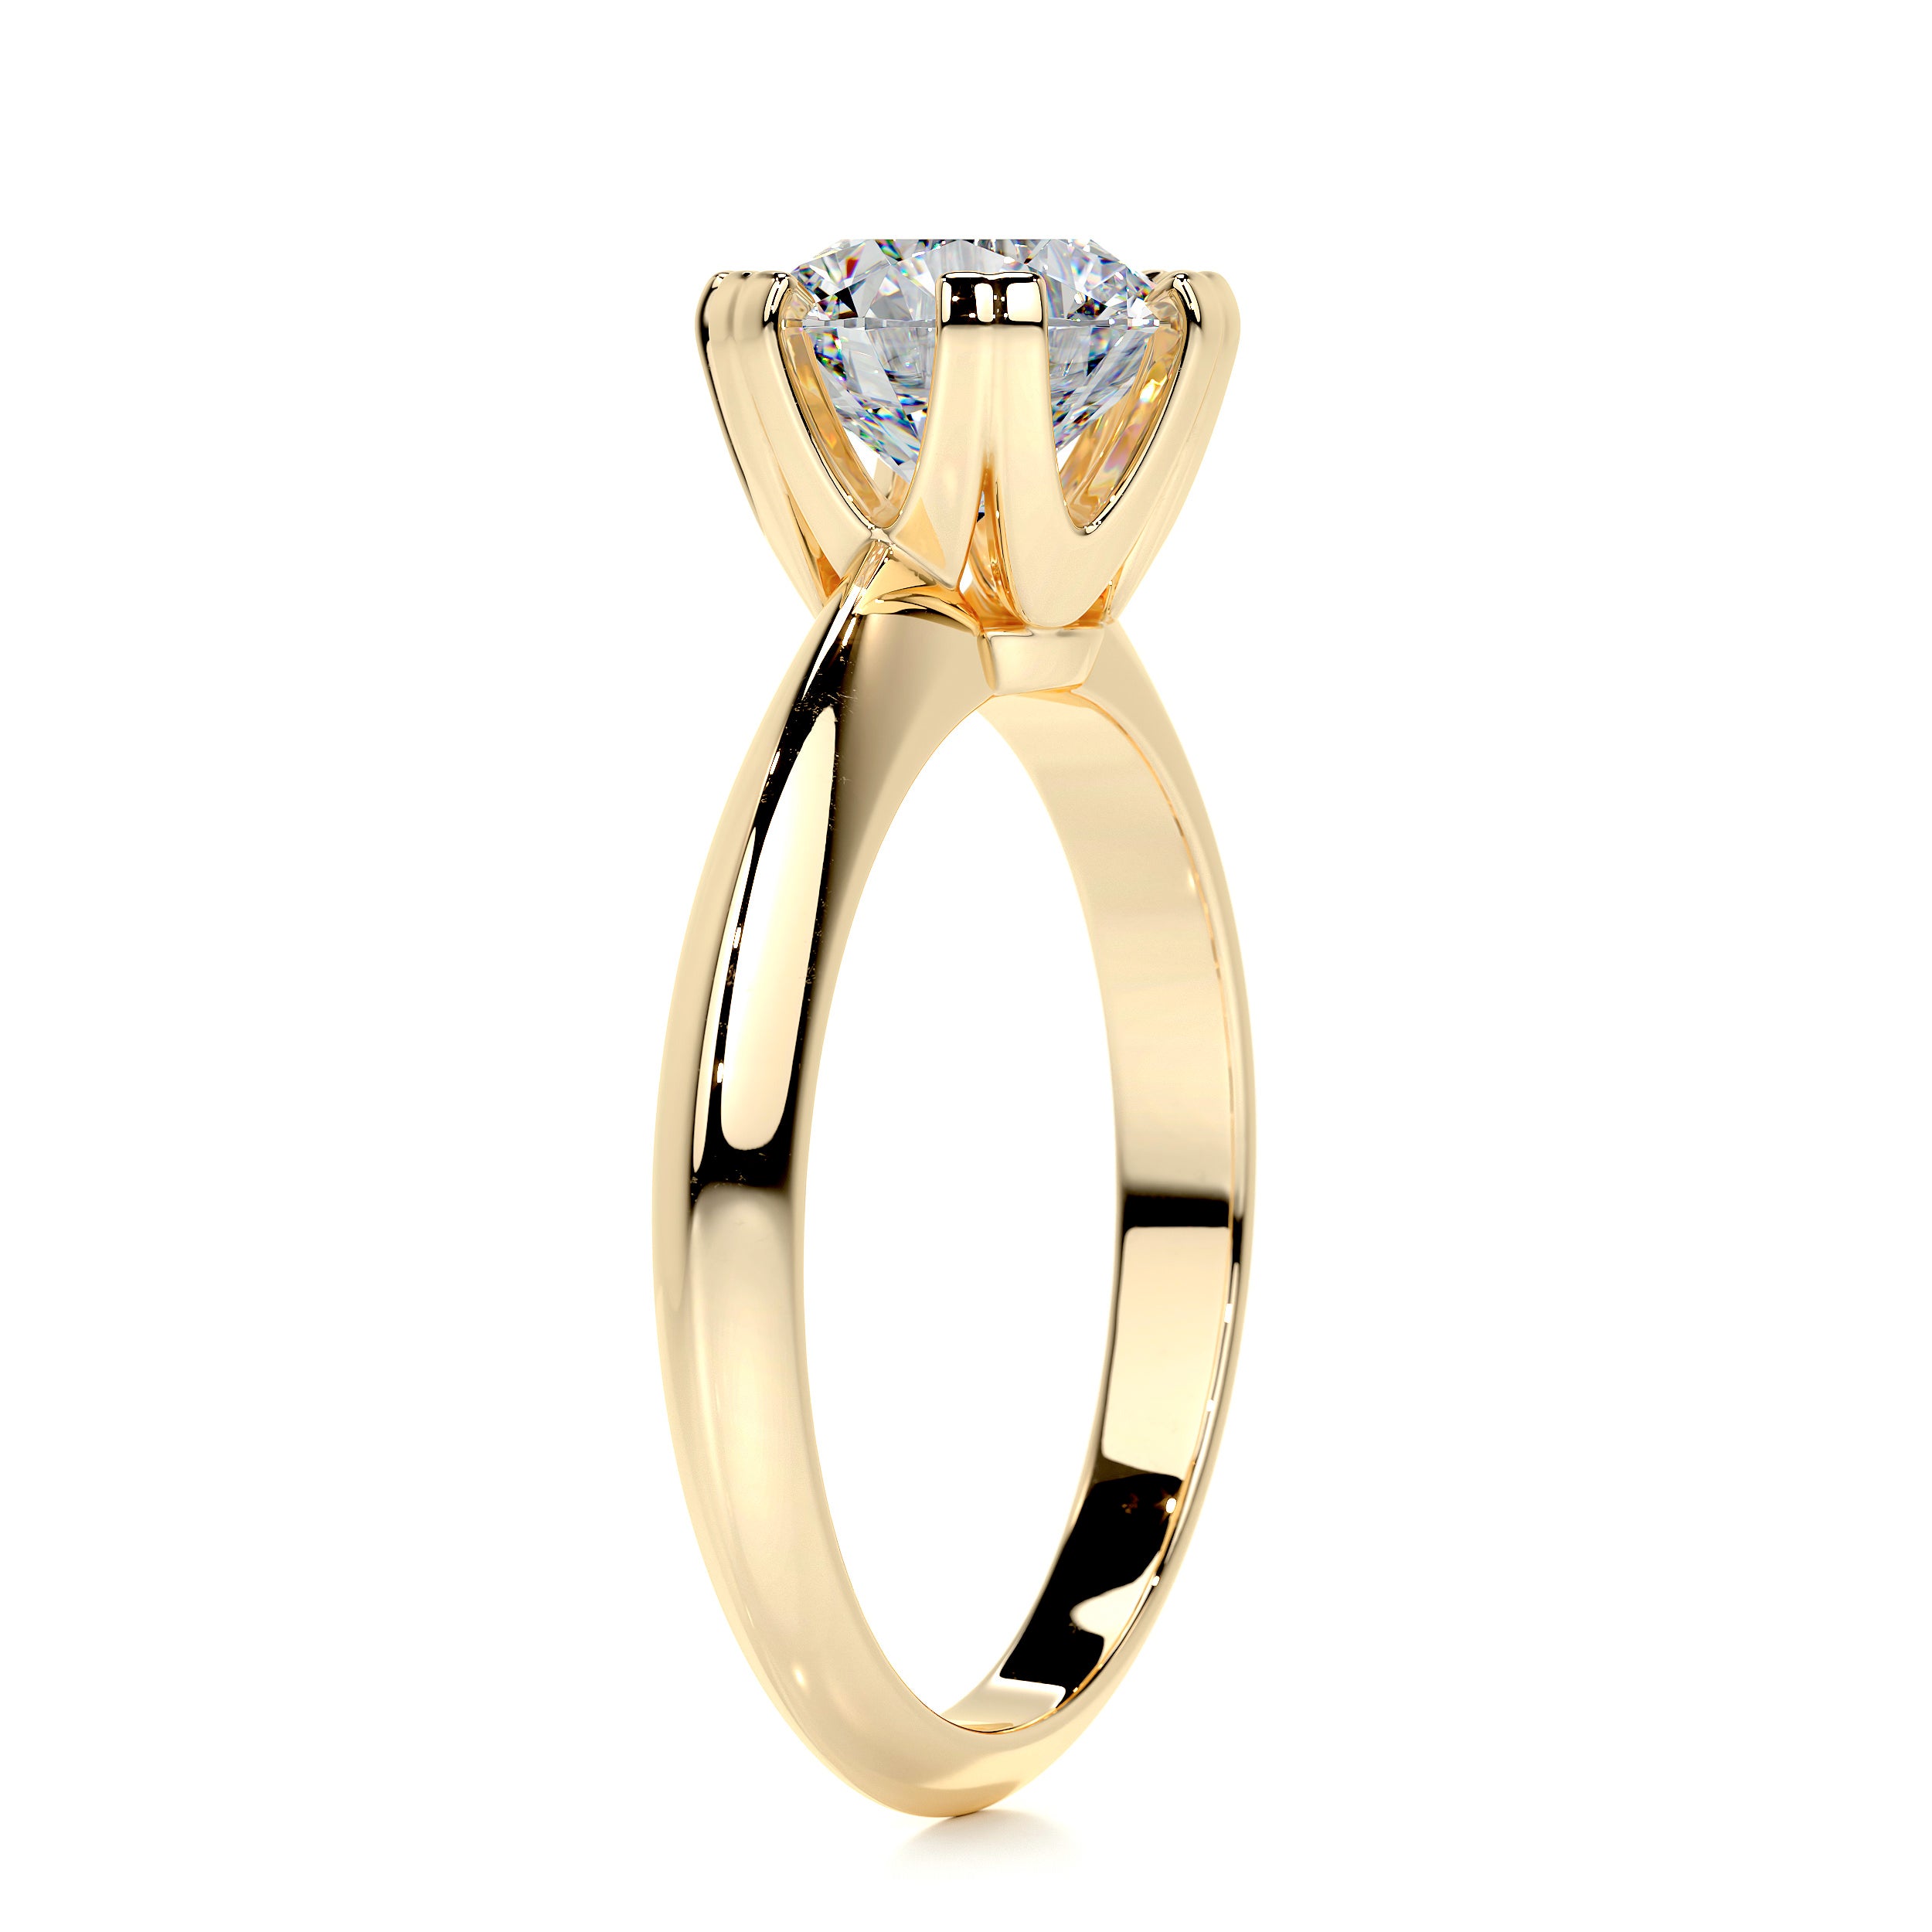 Alexis Moissanite Ring   (1.5 Carat) -18K Yellow Gold